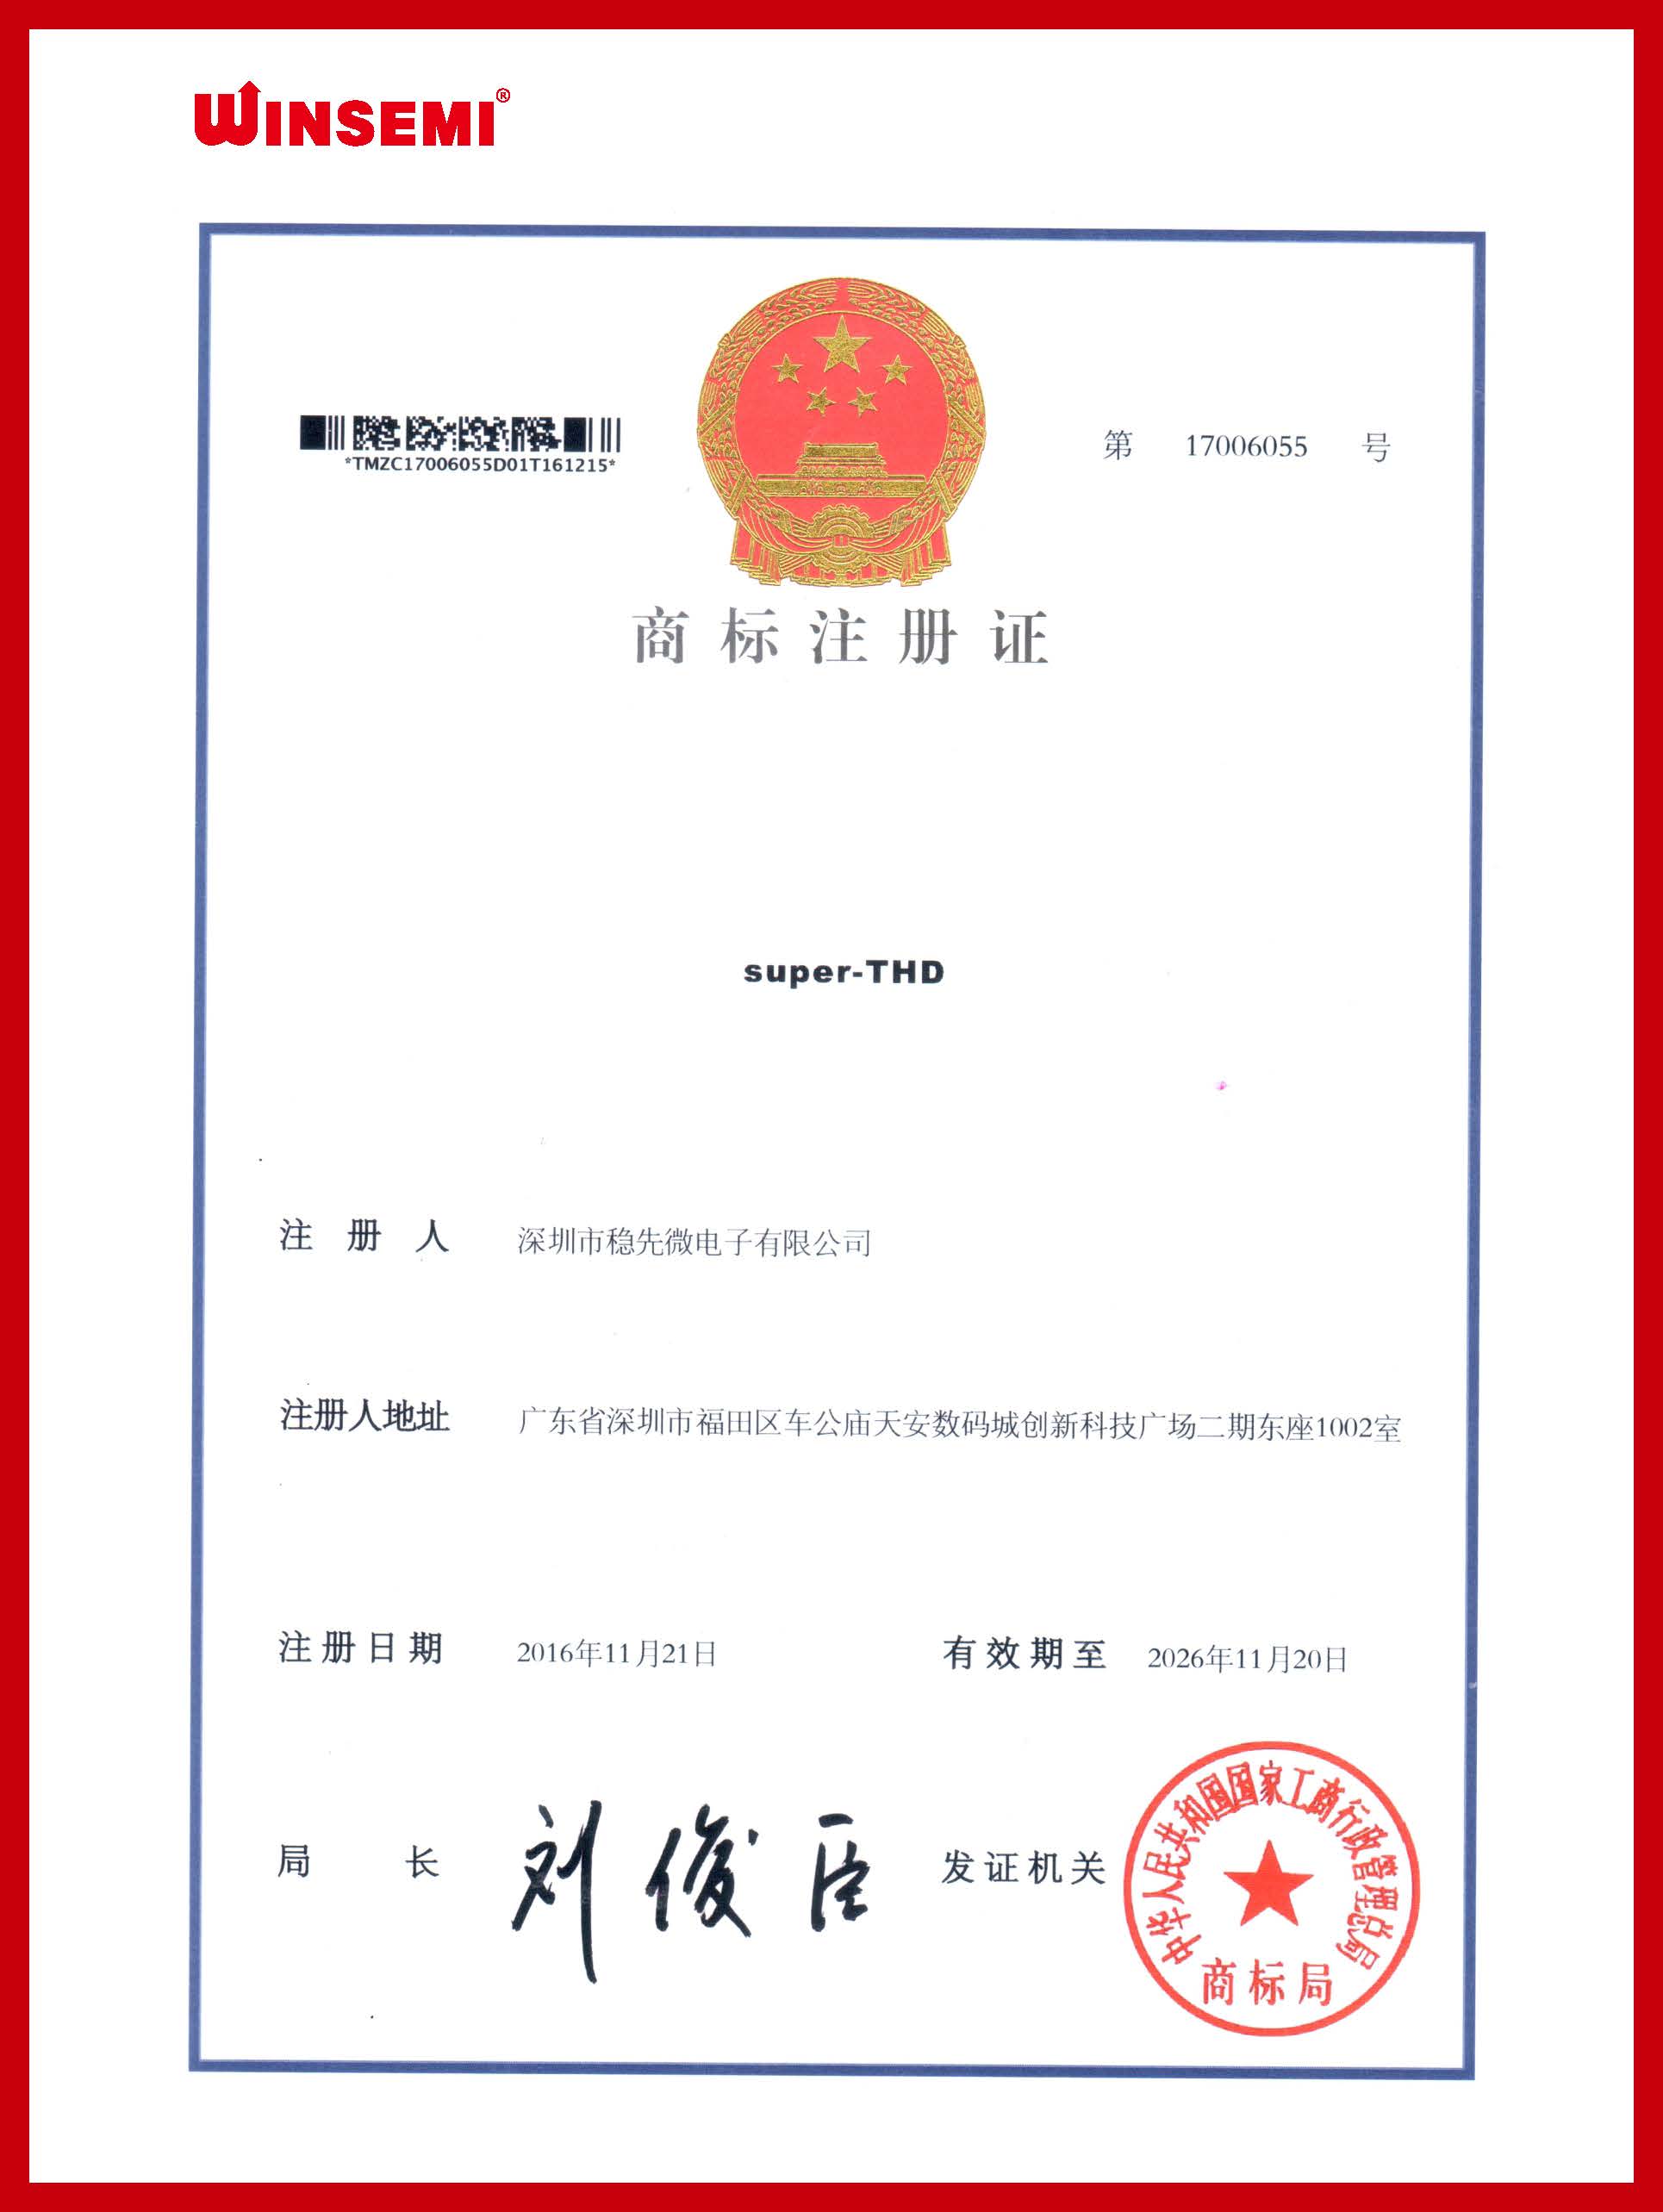 China Trademark Certificate